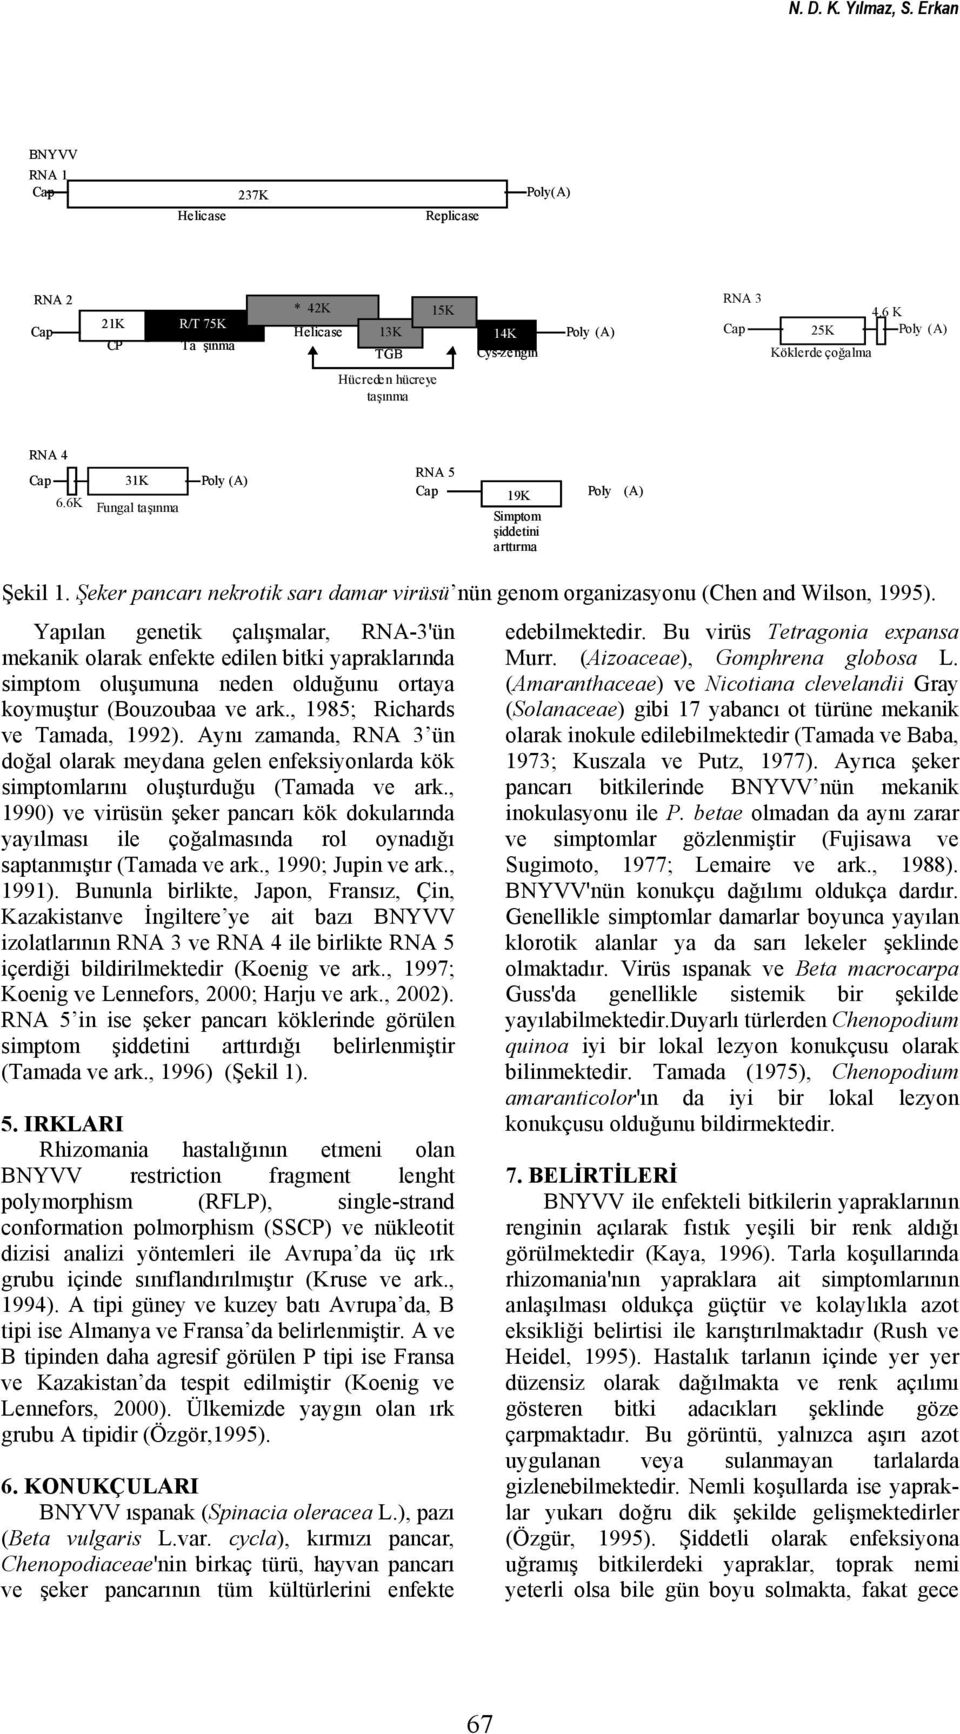 Şeker pancarı nekrotik sarı damar virüsü nün genom organizasyonu (Chen and Wilson, 1995).